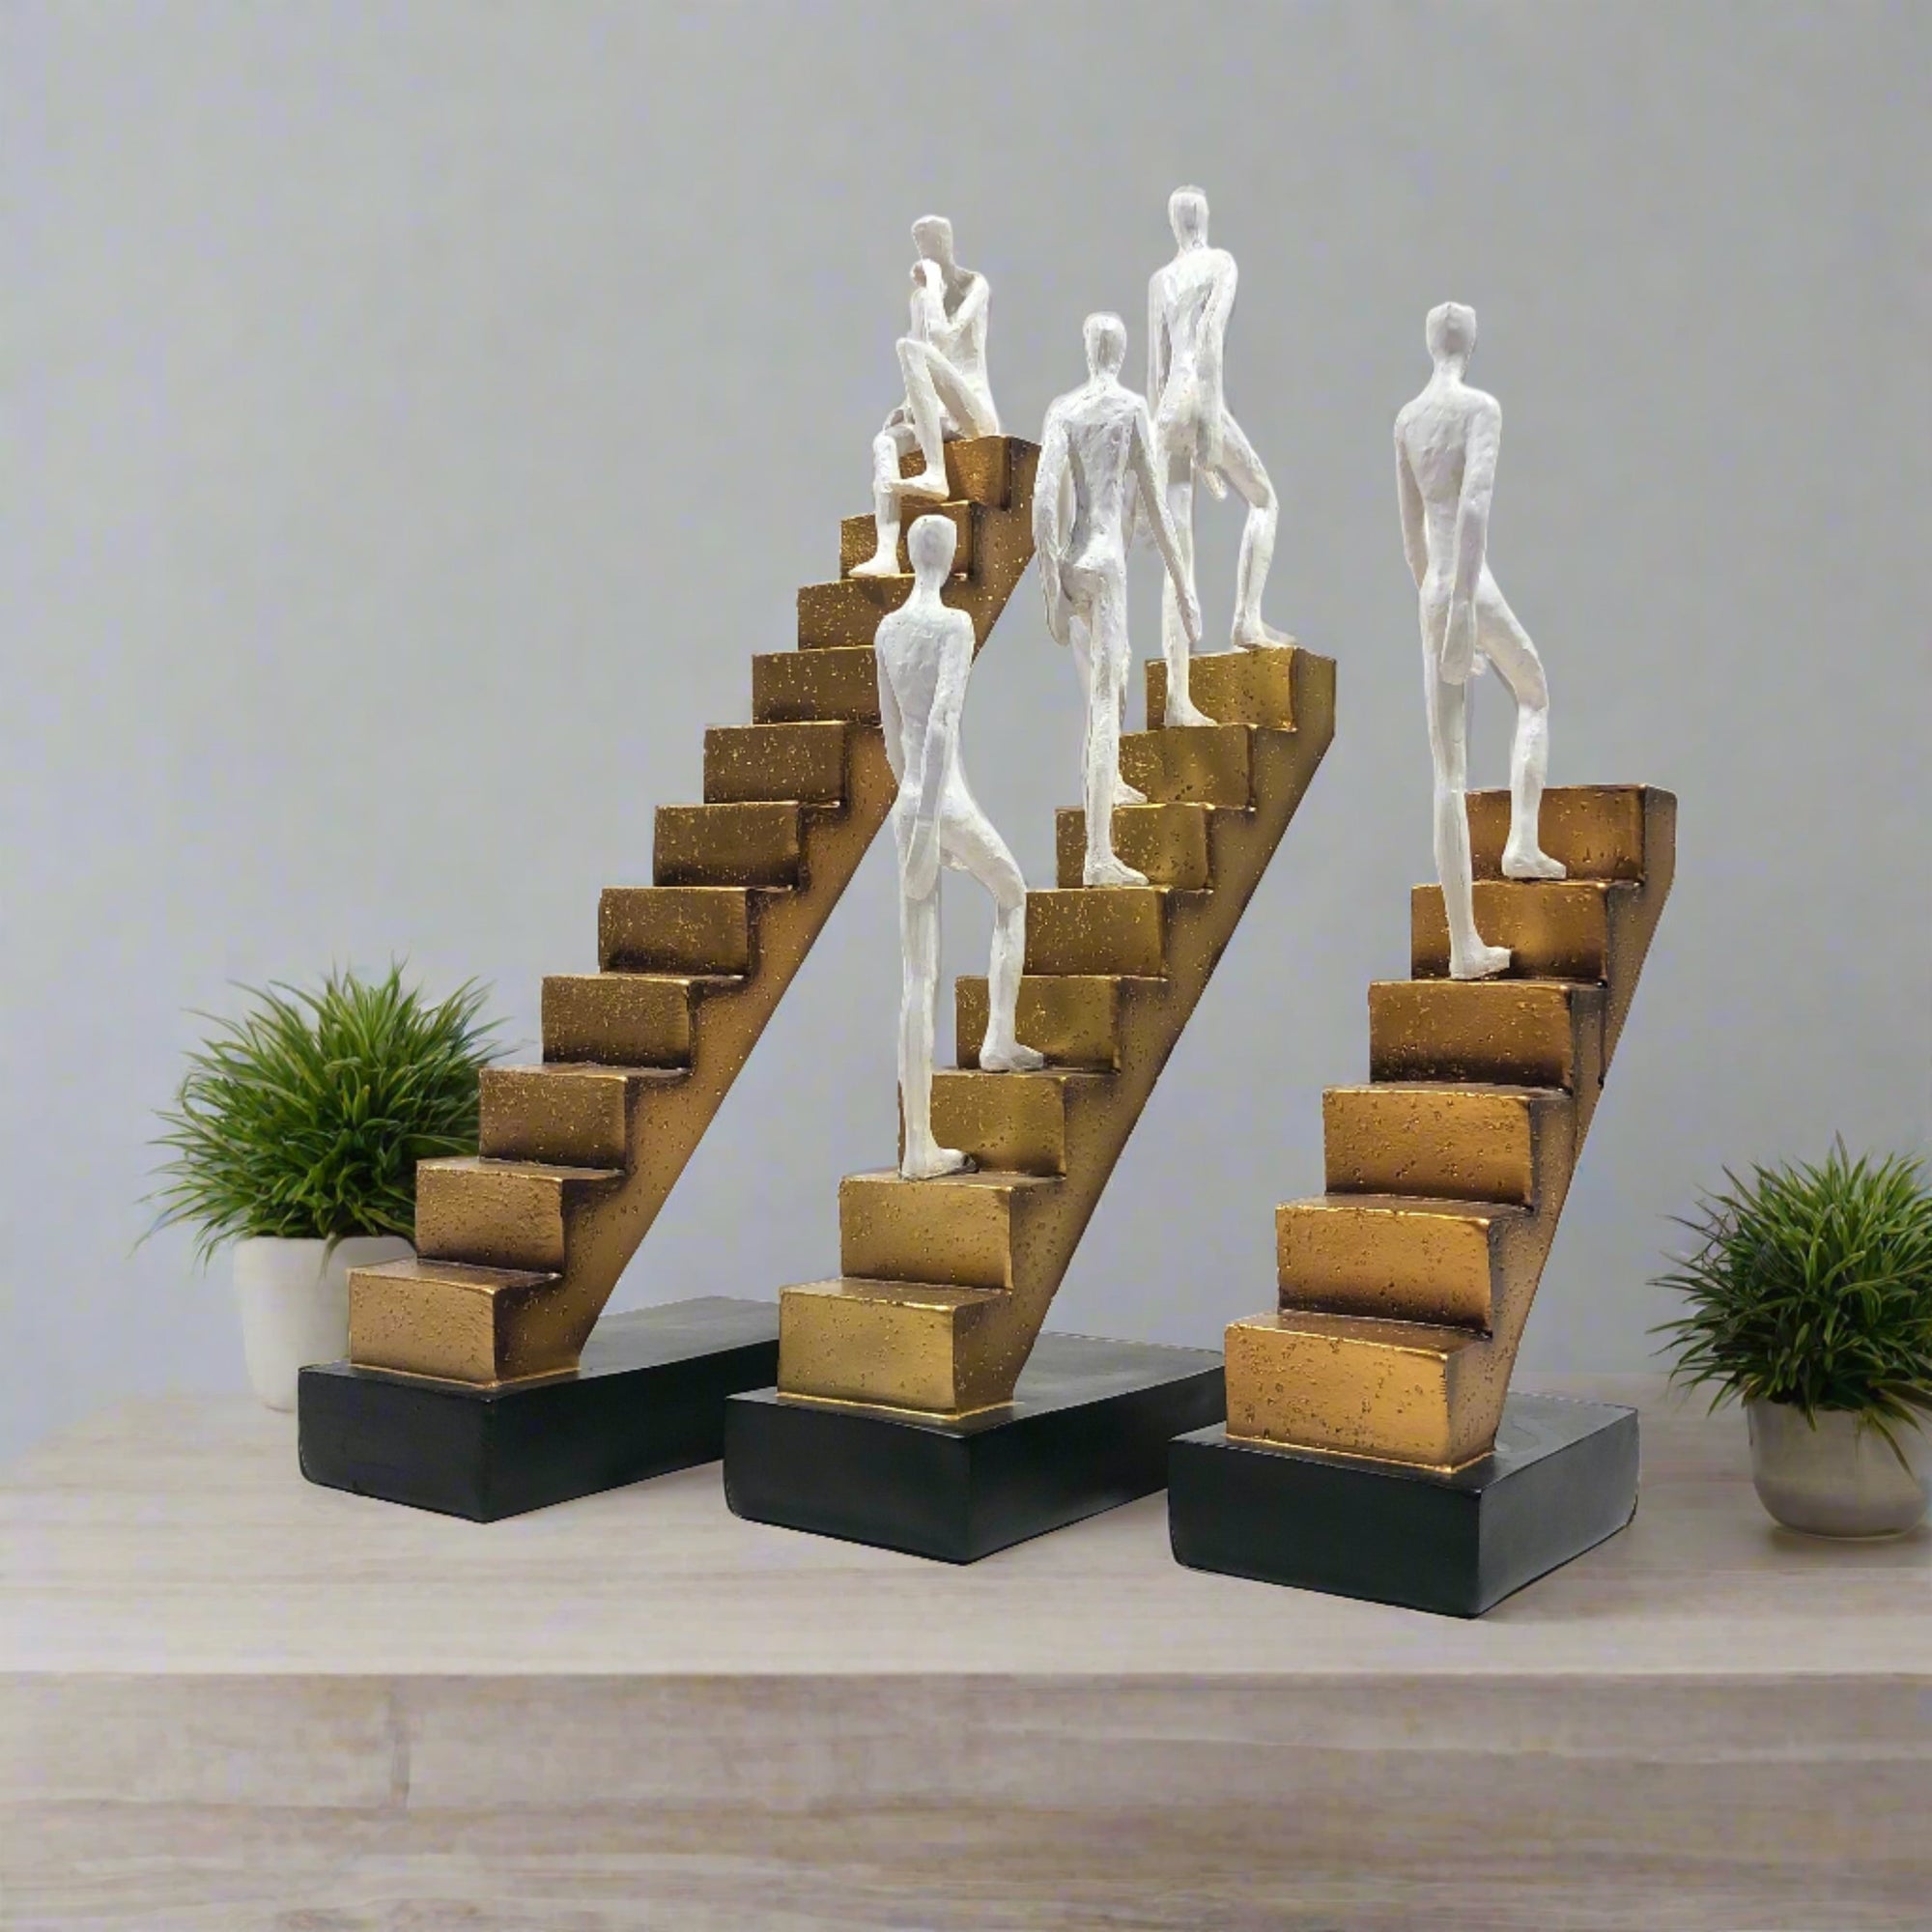 LIUYI Golden Ladder Figurines